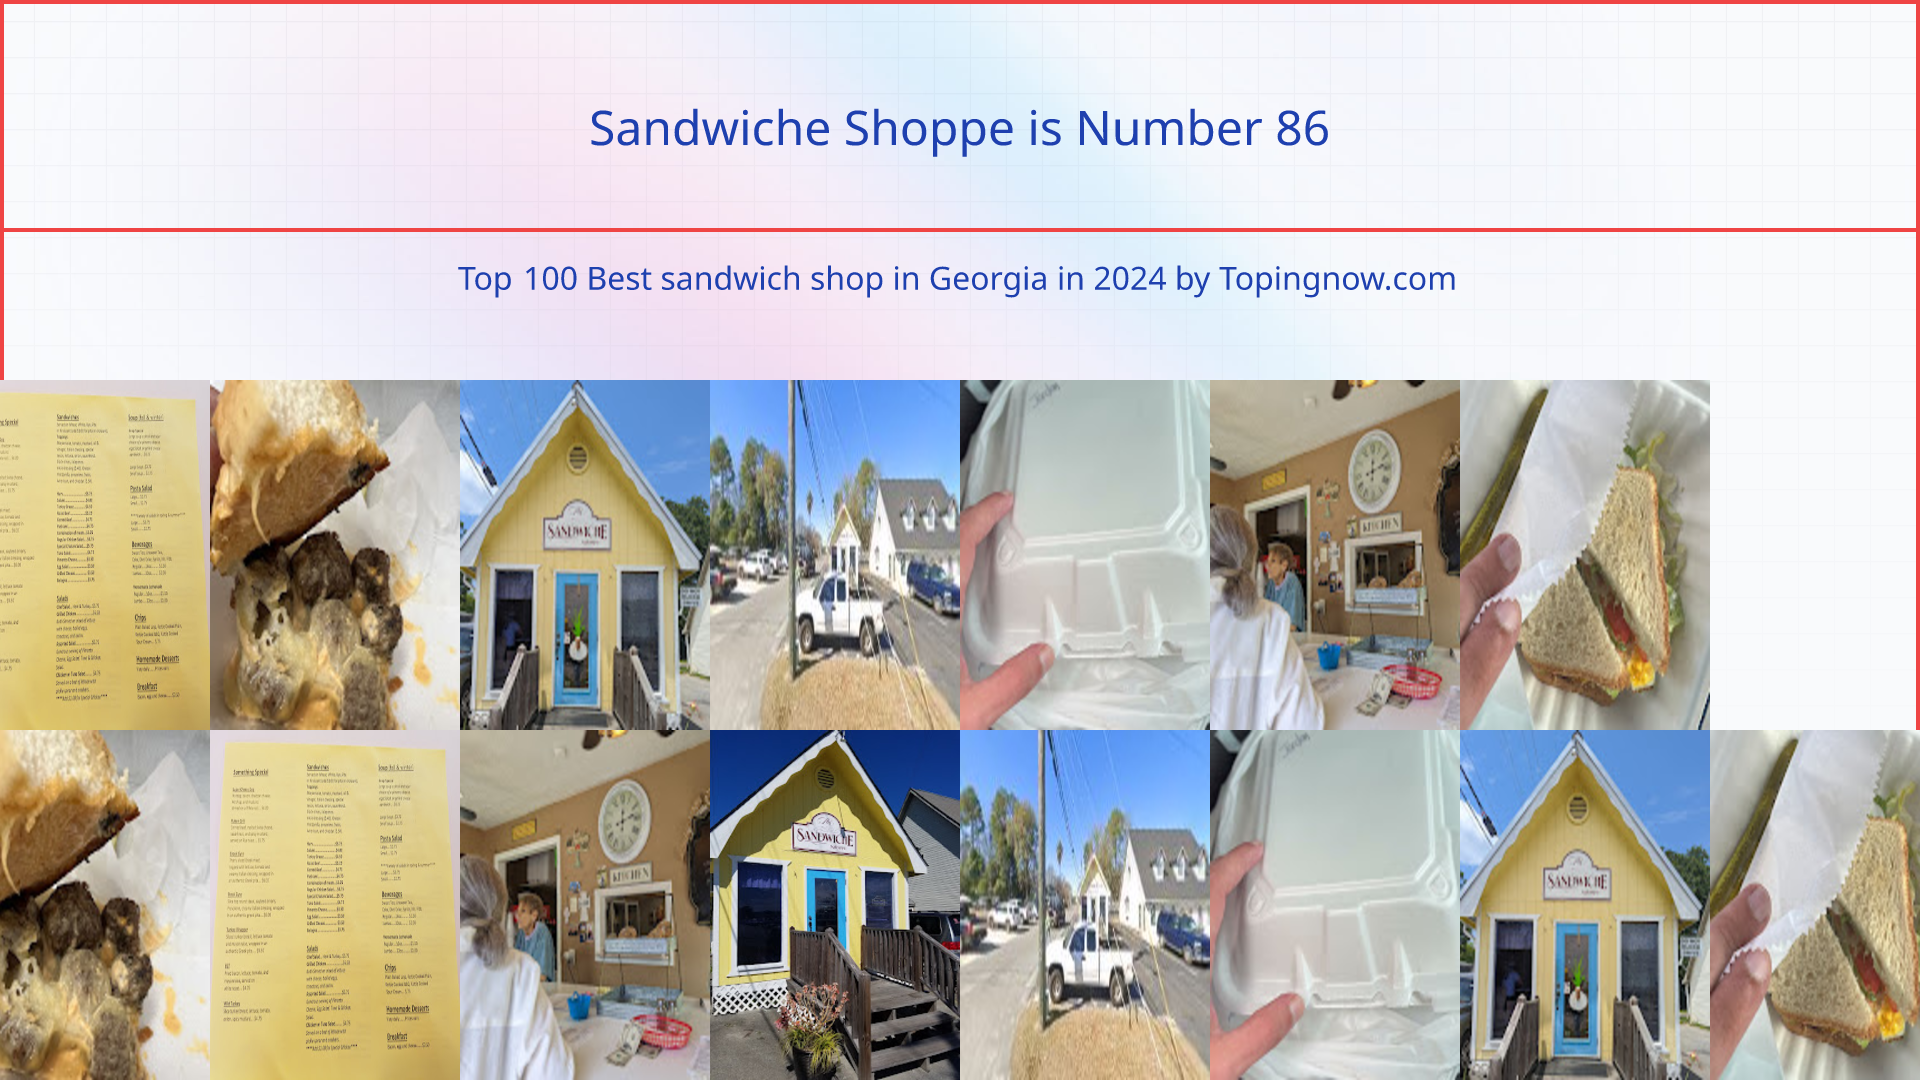 Sandwiche Shoppe: Top 100 Best sandwich shop in Georgia in 2024